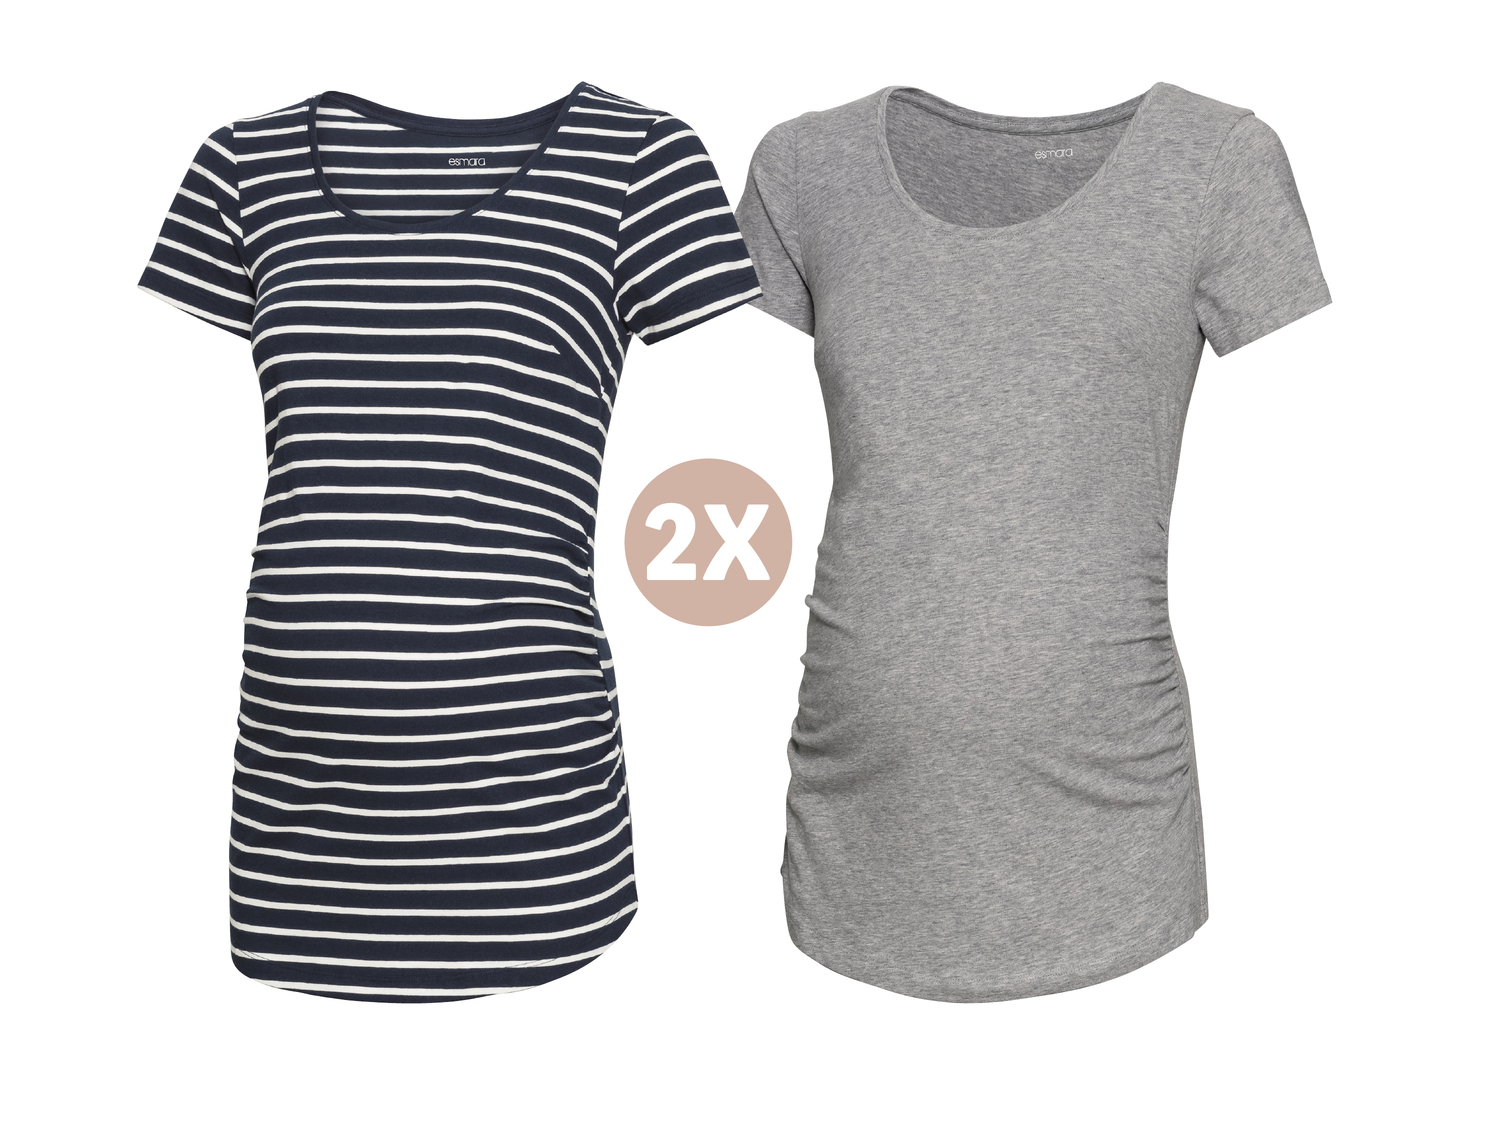 T-shirty ciążowe, 2 szt. Esmara, cena 9,99 PLN 
- różne wzory i rozmiary
Opis

- ...